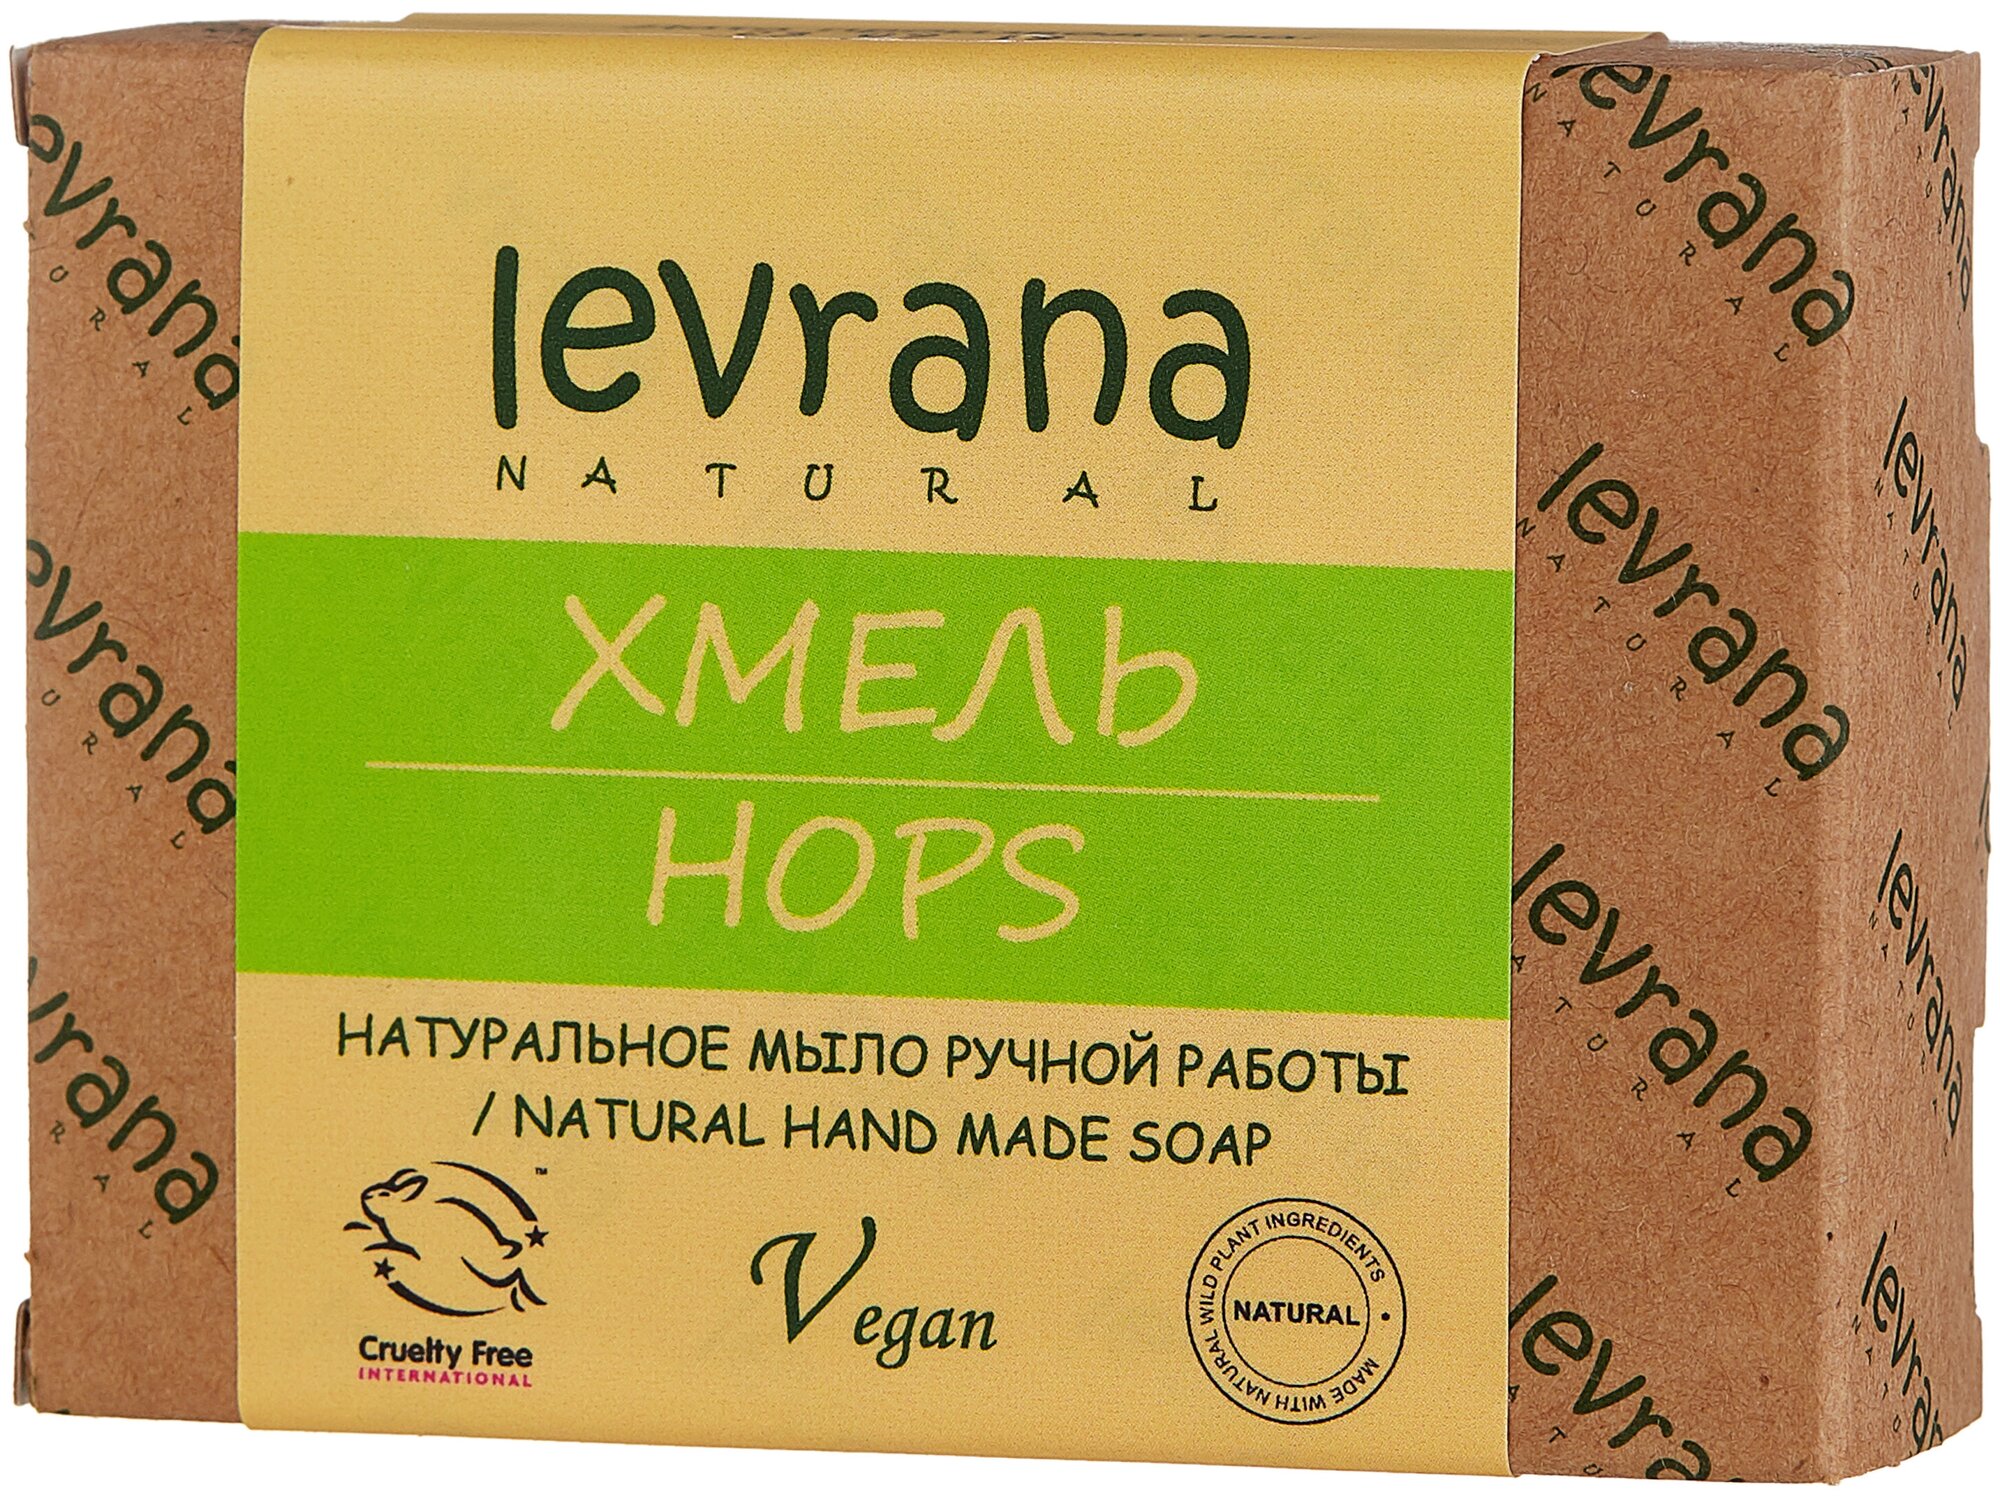 Натуральное мыло ручной работы "Хмель", Levrana